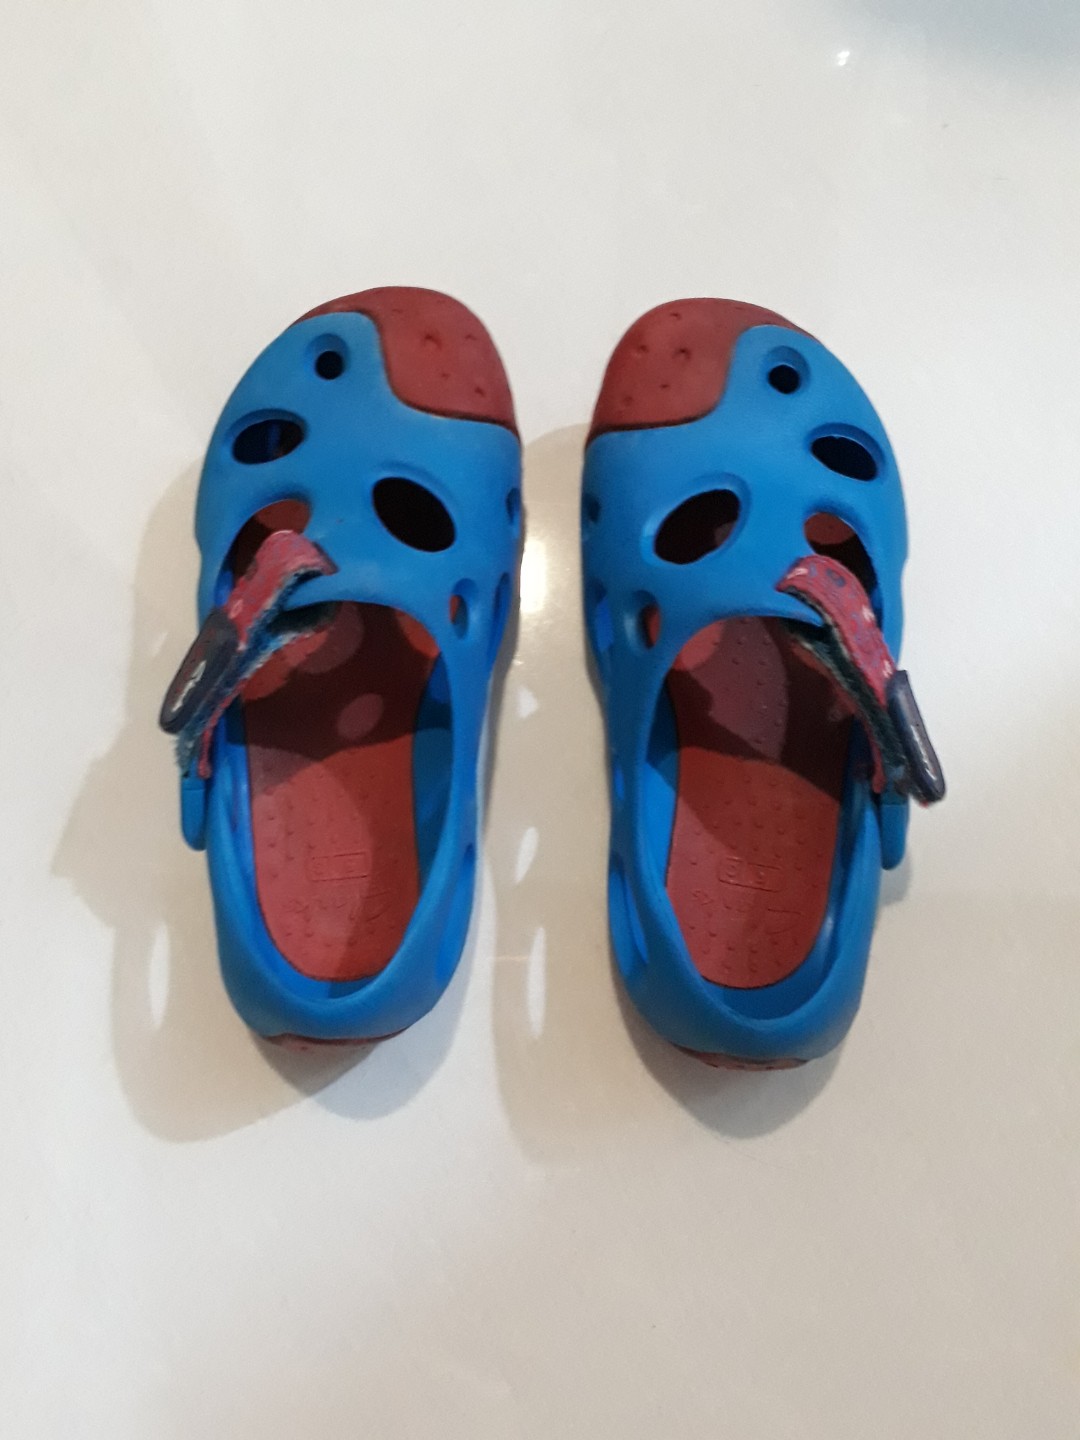 clarks waterproof sandals